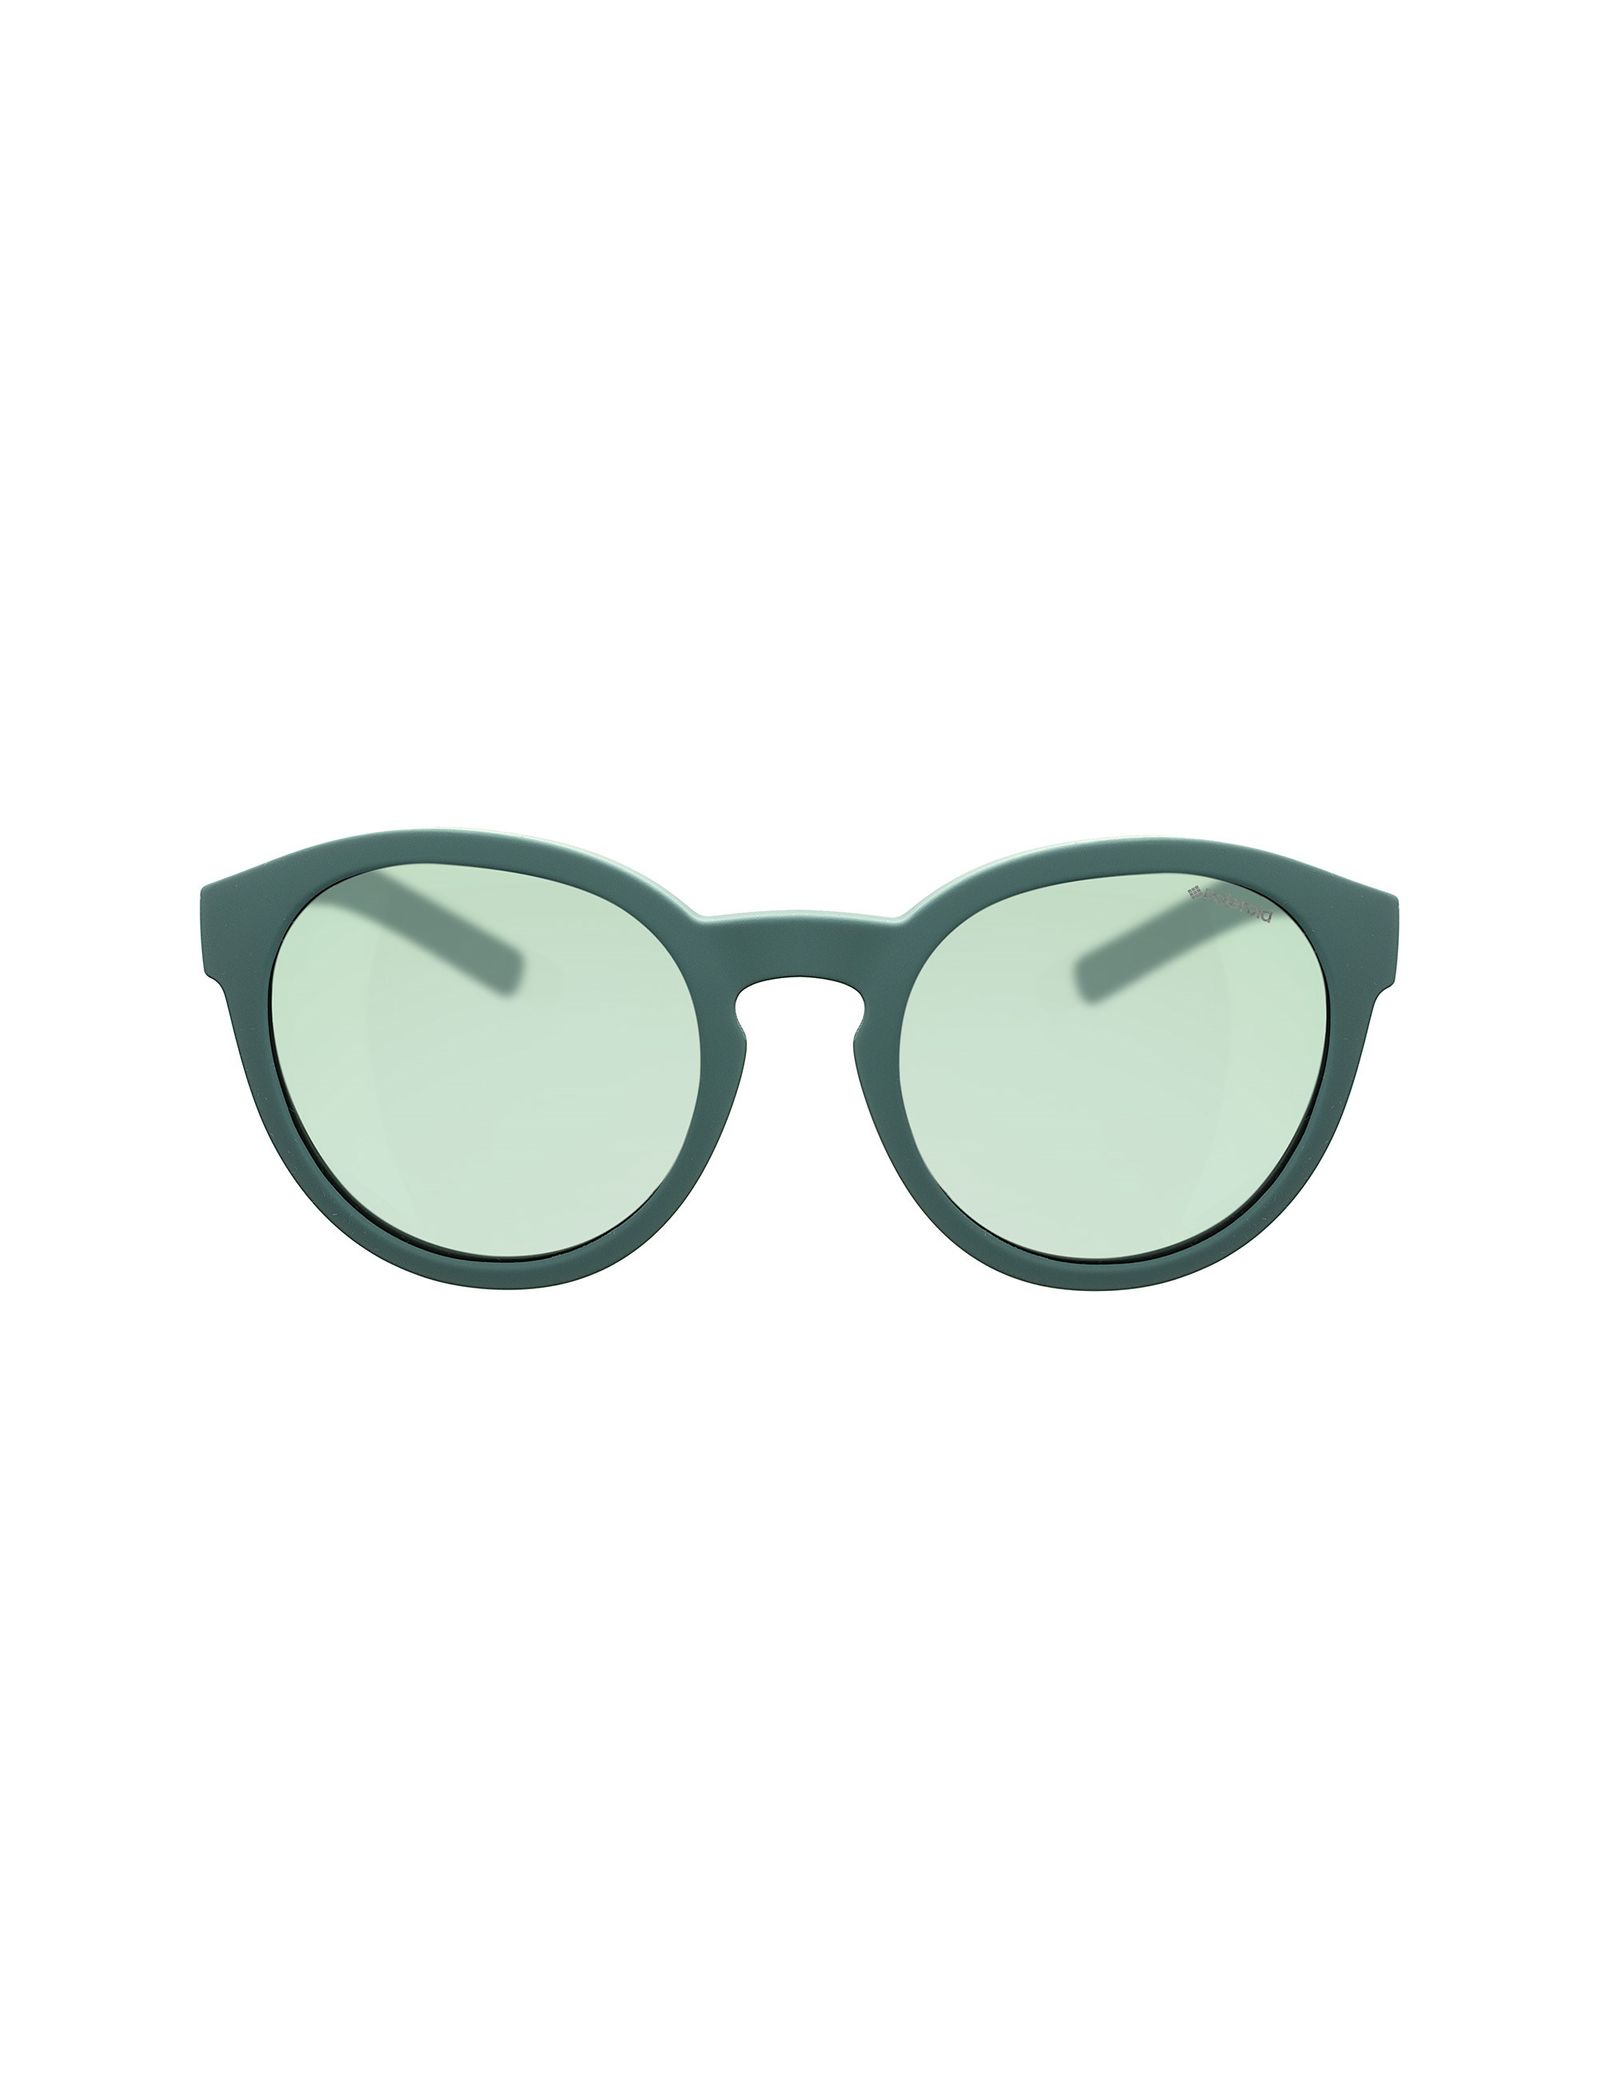 عینک آفتابی پنتوس بچگانه - پولاروید - سبز - 1